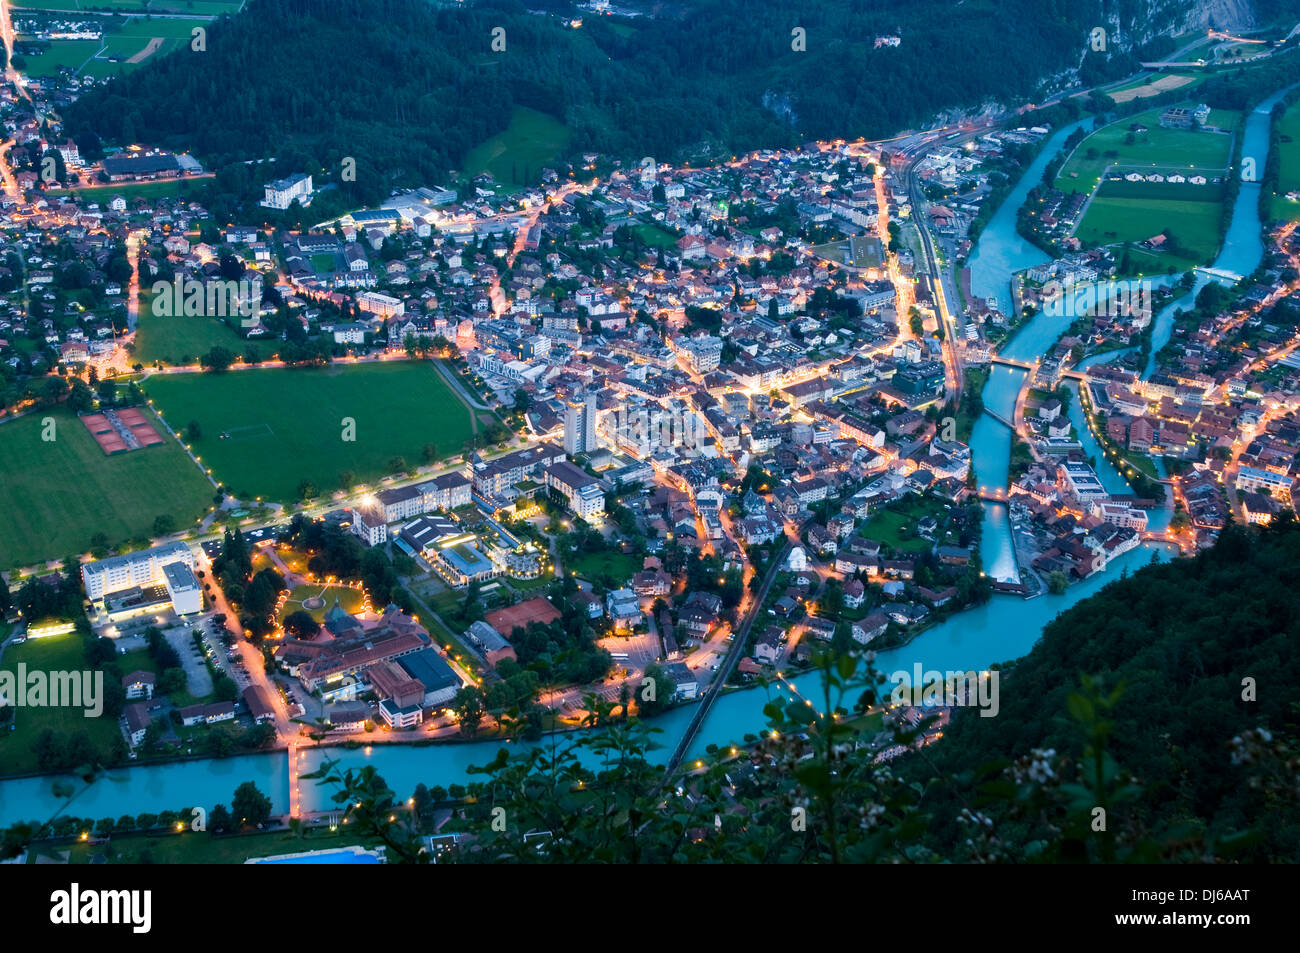 L'Europa. La Svizzera, Canton Berna. Oberland Bernese, Interlaken. Aare, il collegamento tra i laghi Brienzersee Thunersee e. Foto Stock